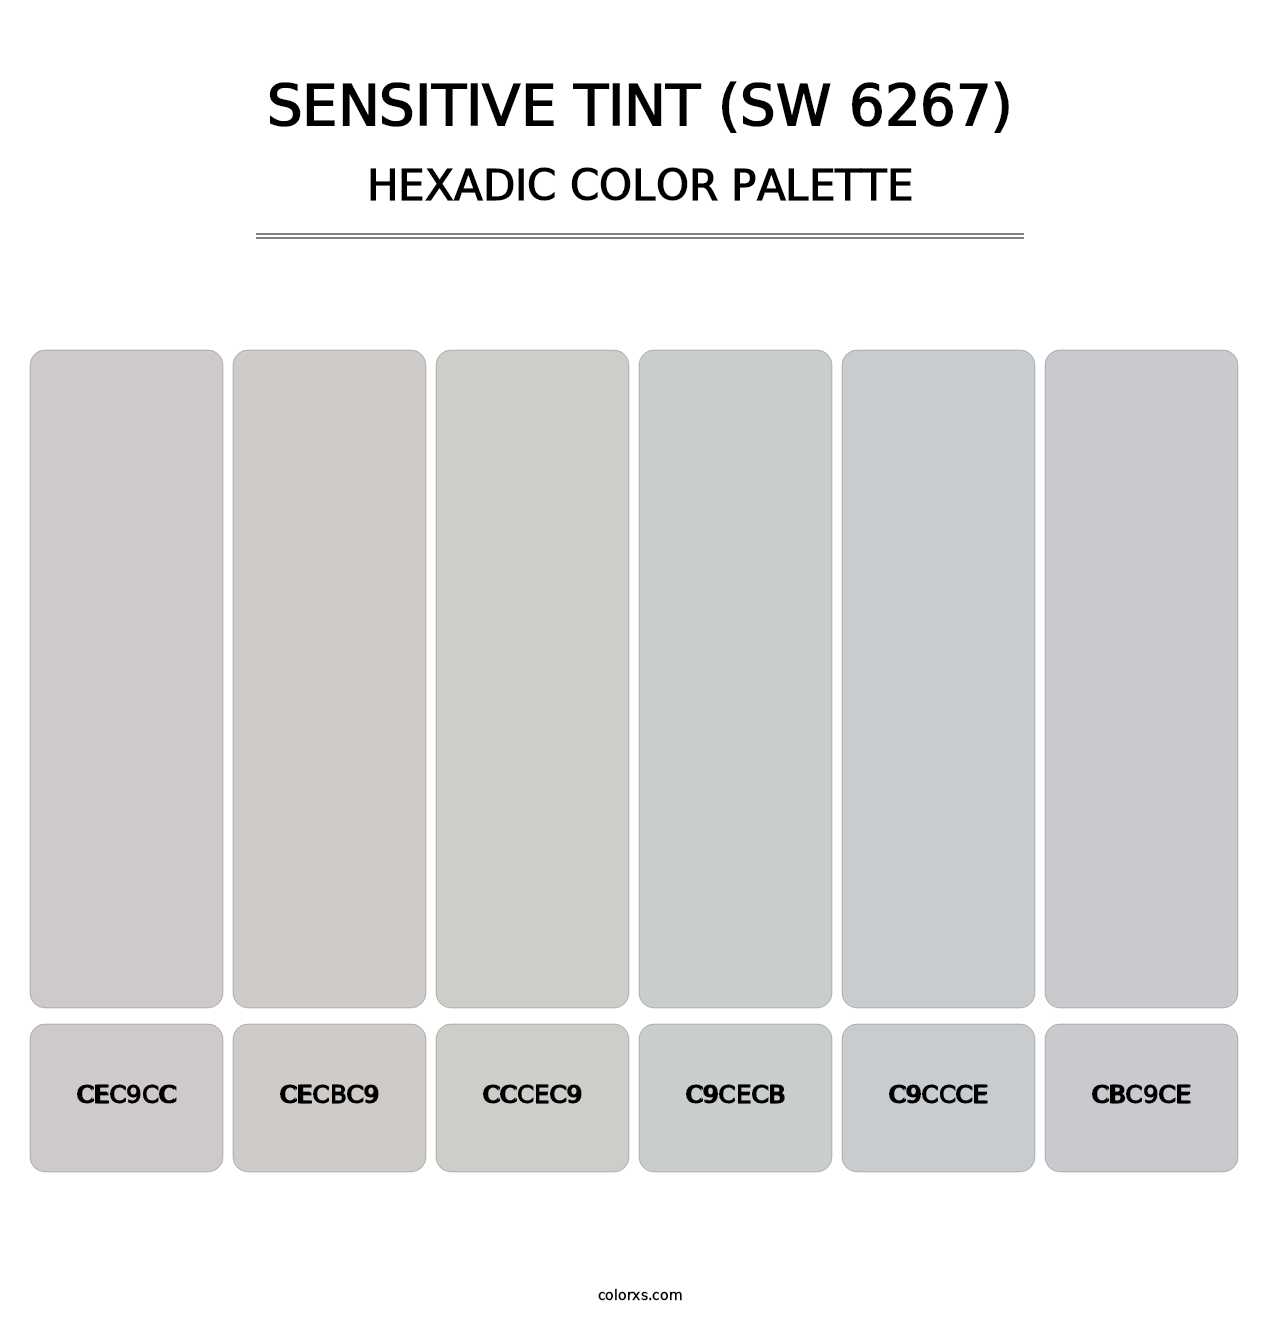 Sensitive Tint (SW 6267) - Hexadic Color Palette